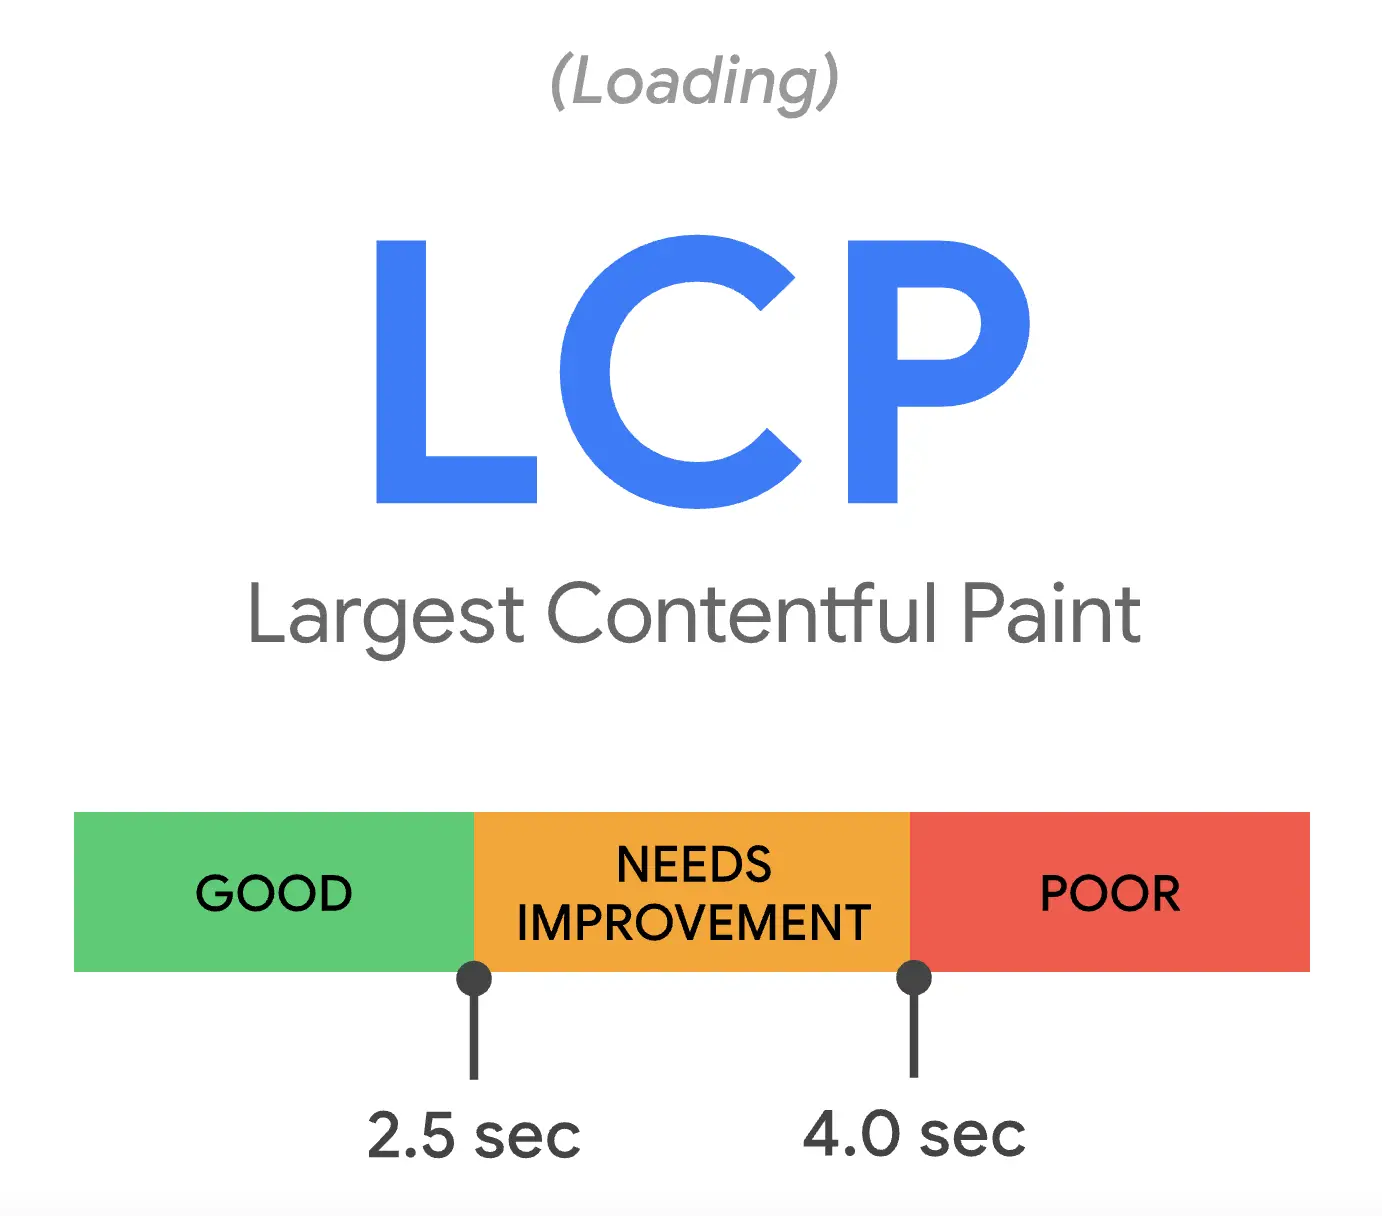 core web vitals - largest contentful paint